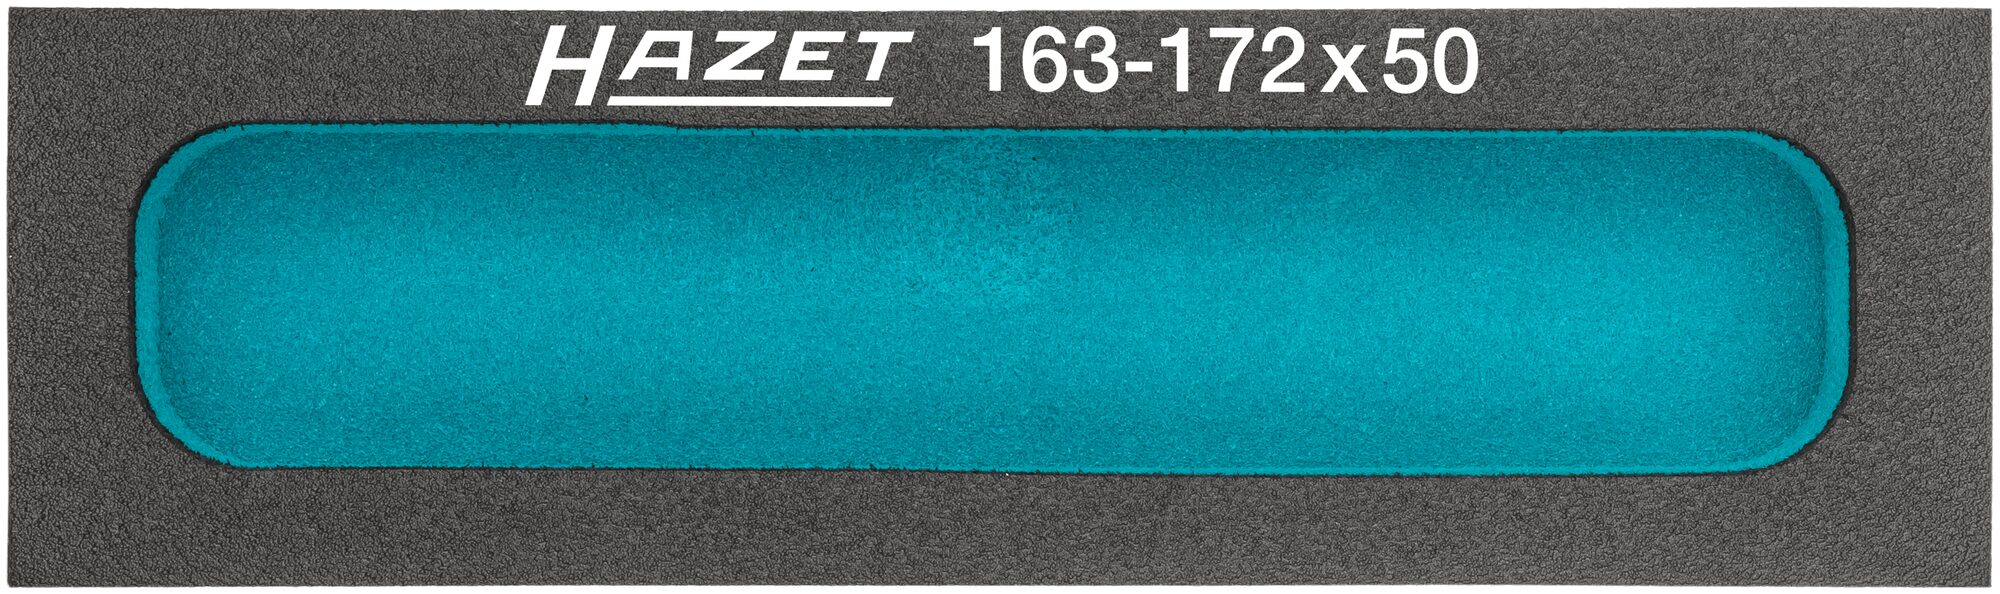 HAZET Weichschaum-Einlage · mit Kleinteilefächern 163-172X50